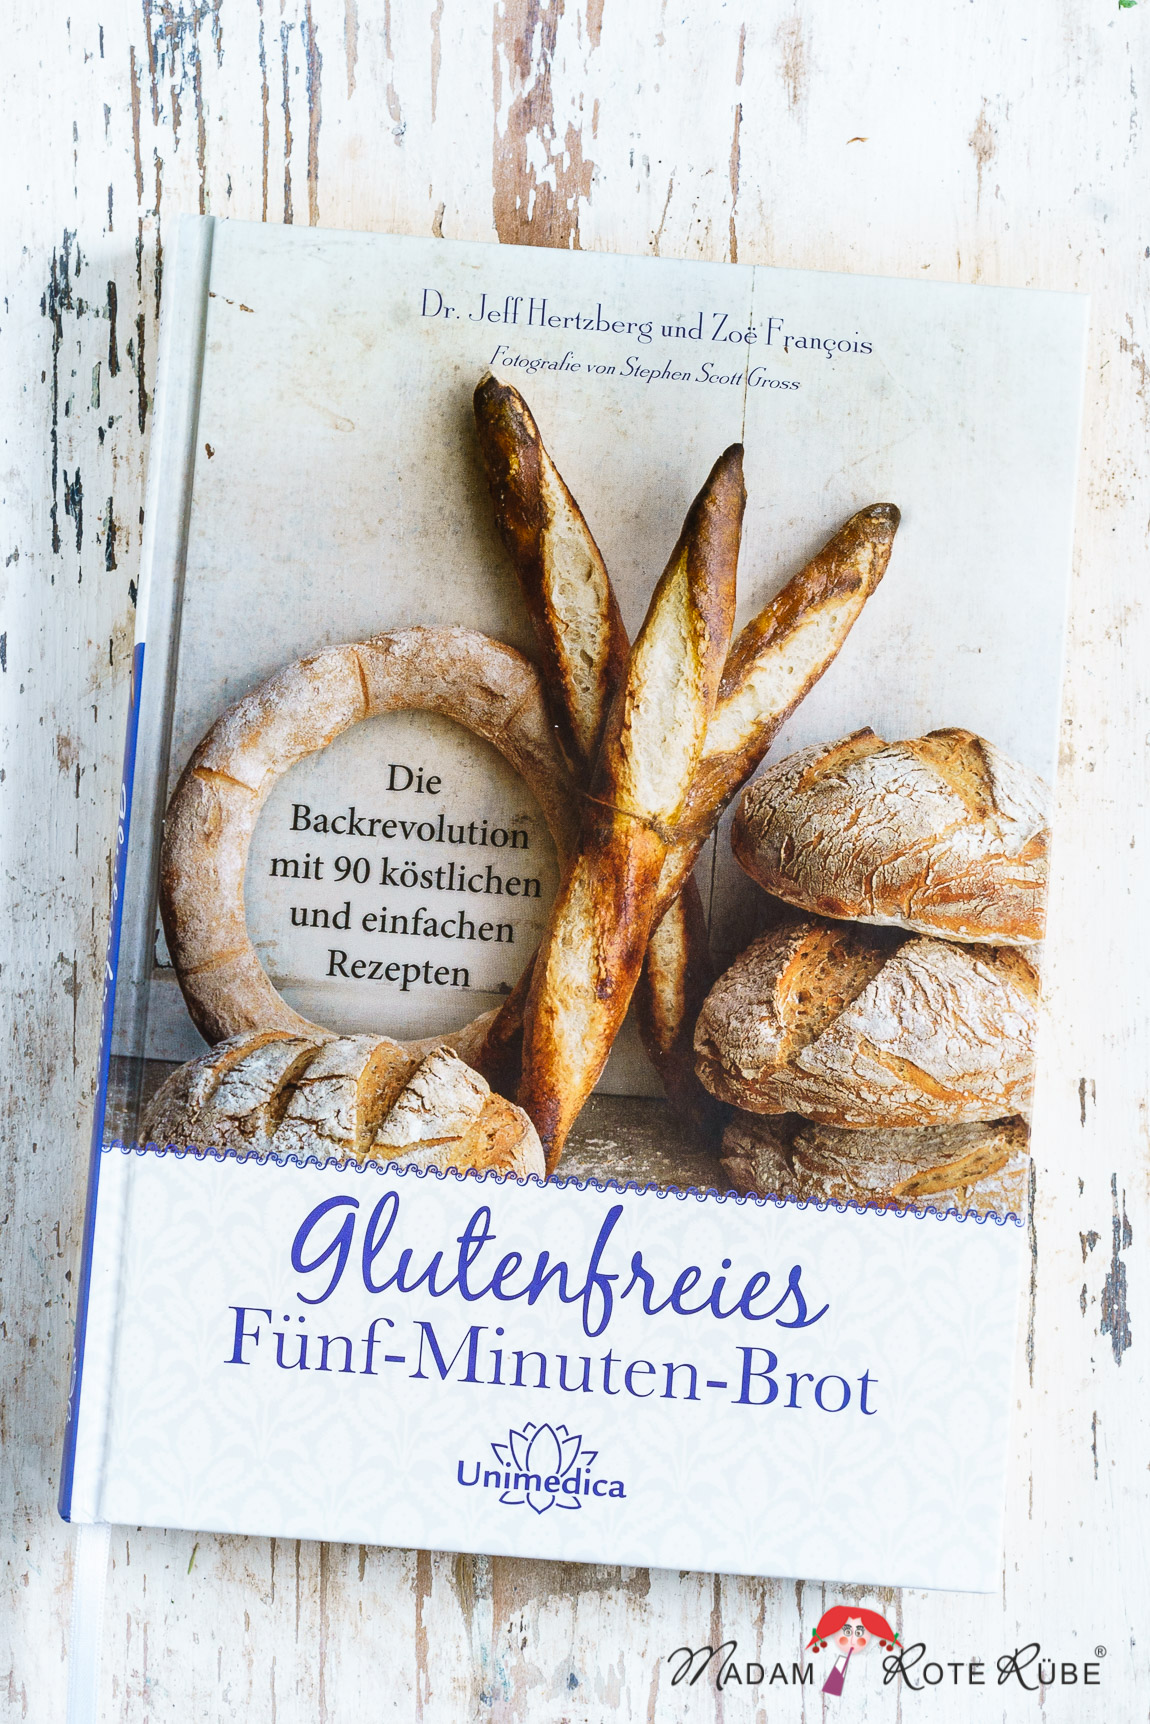 Madam Rote Rübe - 100-%-Vollkornkörnerbrot & eine Buchvorstellung: "Glutenfreies Fünf-Minuten-Brot" von Dr. J. Hertzberg / Z. Francois